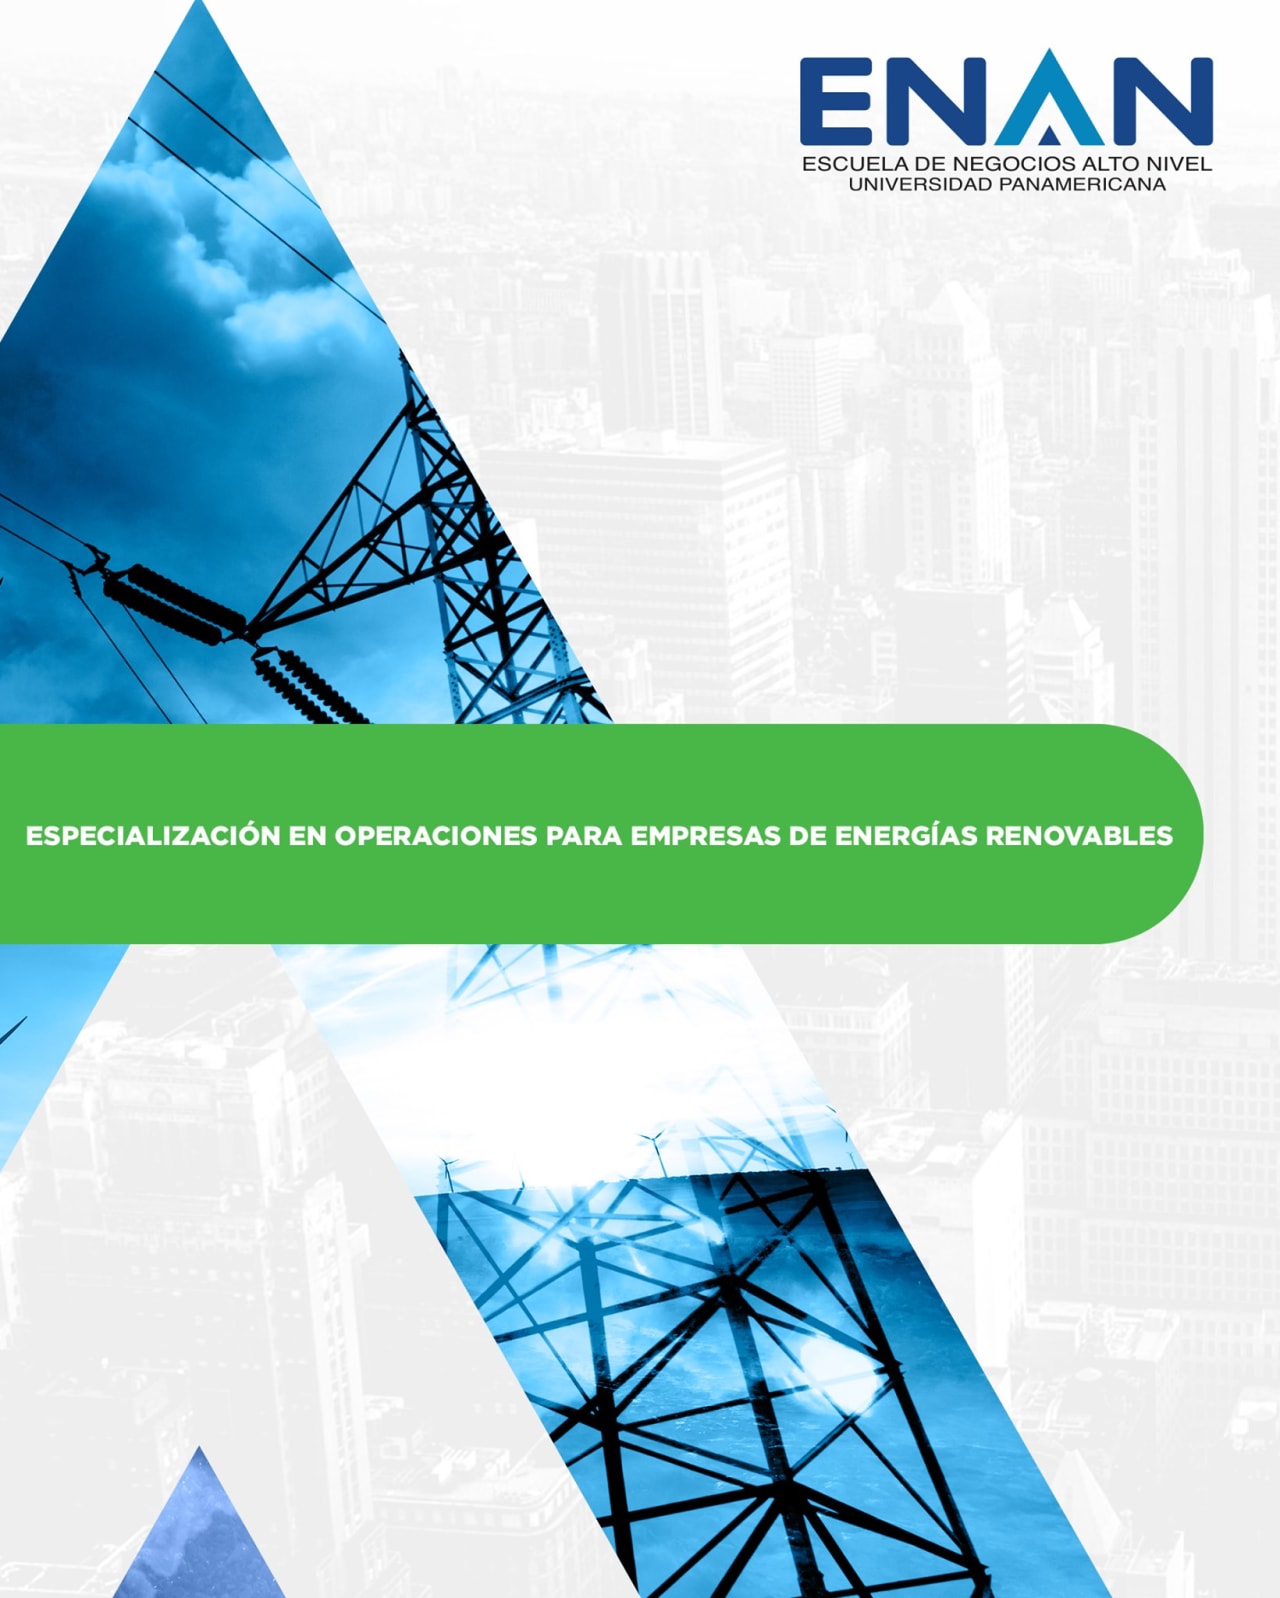 Escuela de Negocios Alto Nivel - Universidad Panamericana de Guatemala Erikoistuminen uusiutuvaa energiaa käyttävien yritysten toimintaan